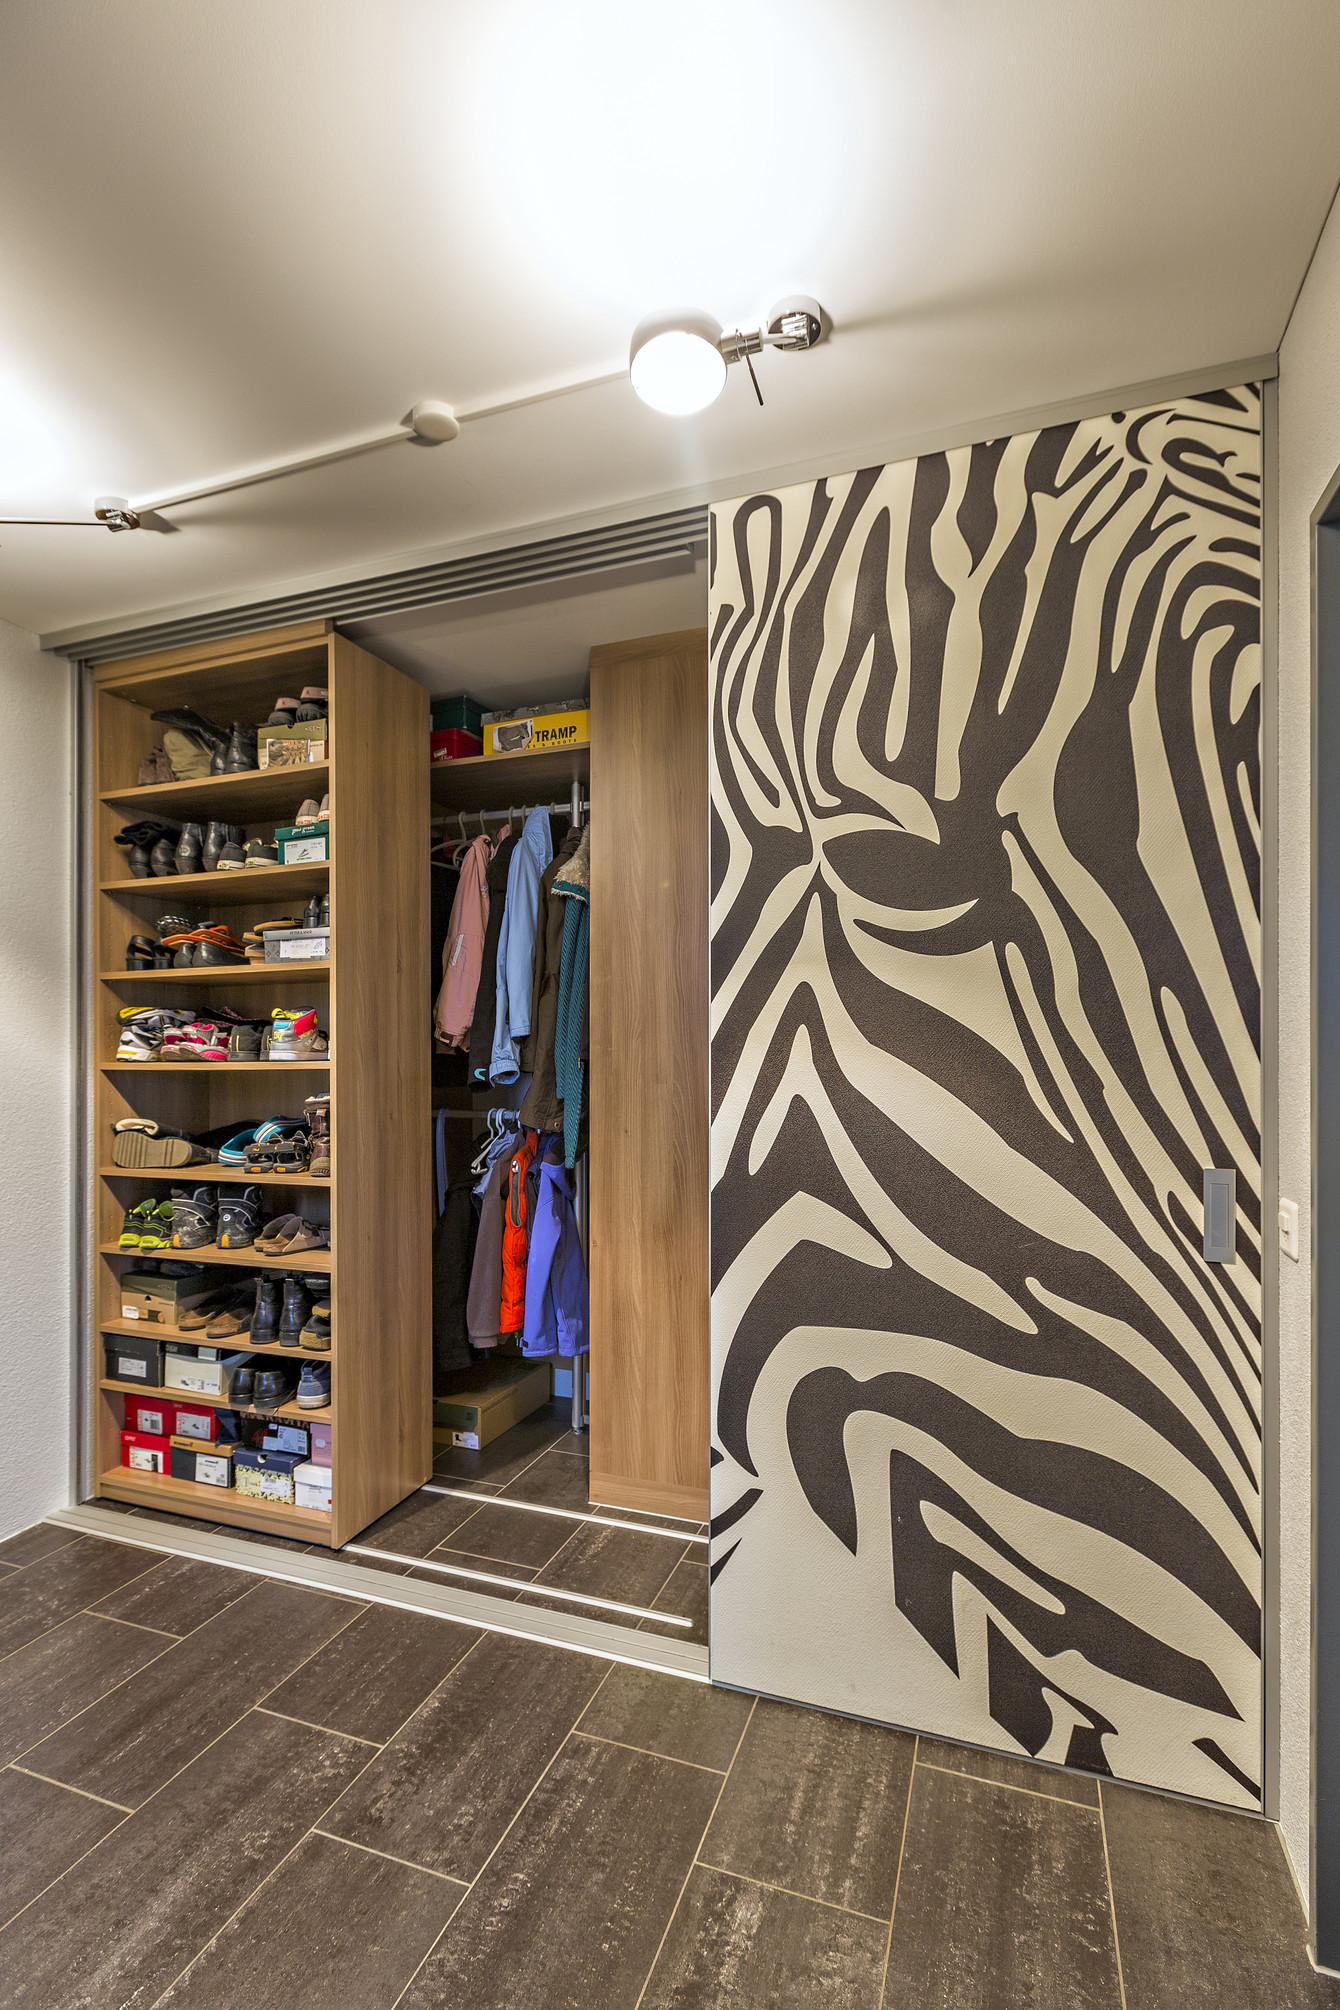 Begehbarer Schrankraum für Garderobe und Schuhe und Frontgestaltung im Zebra-Look 